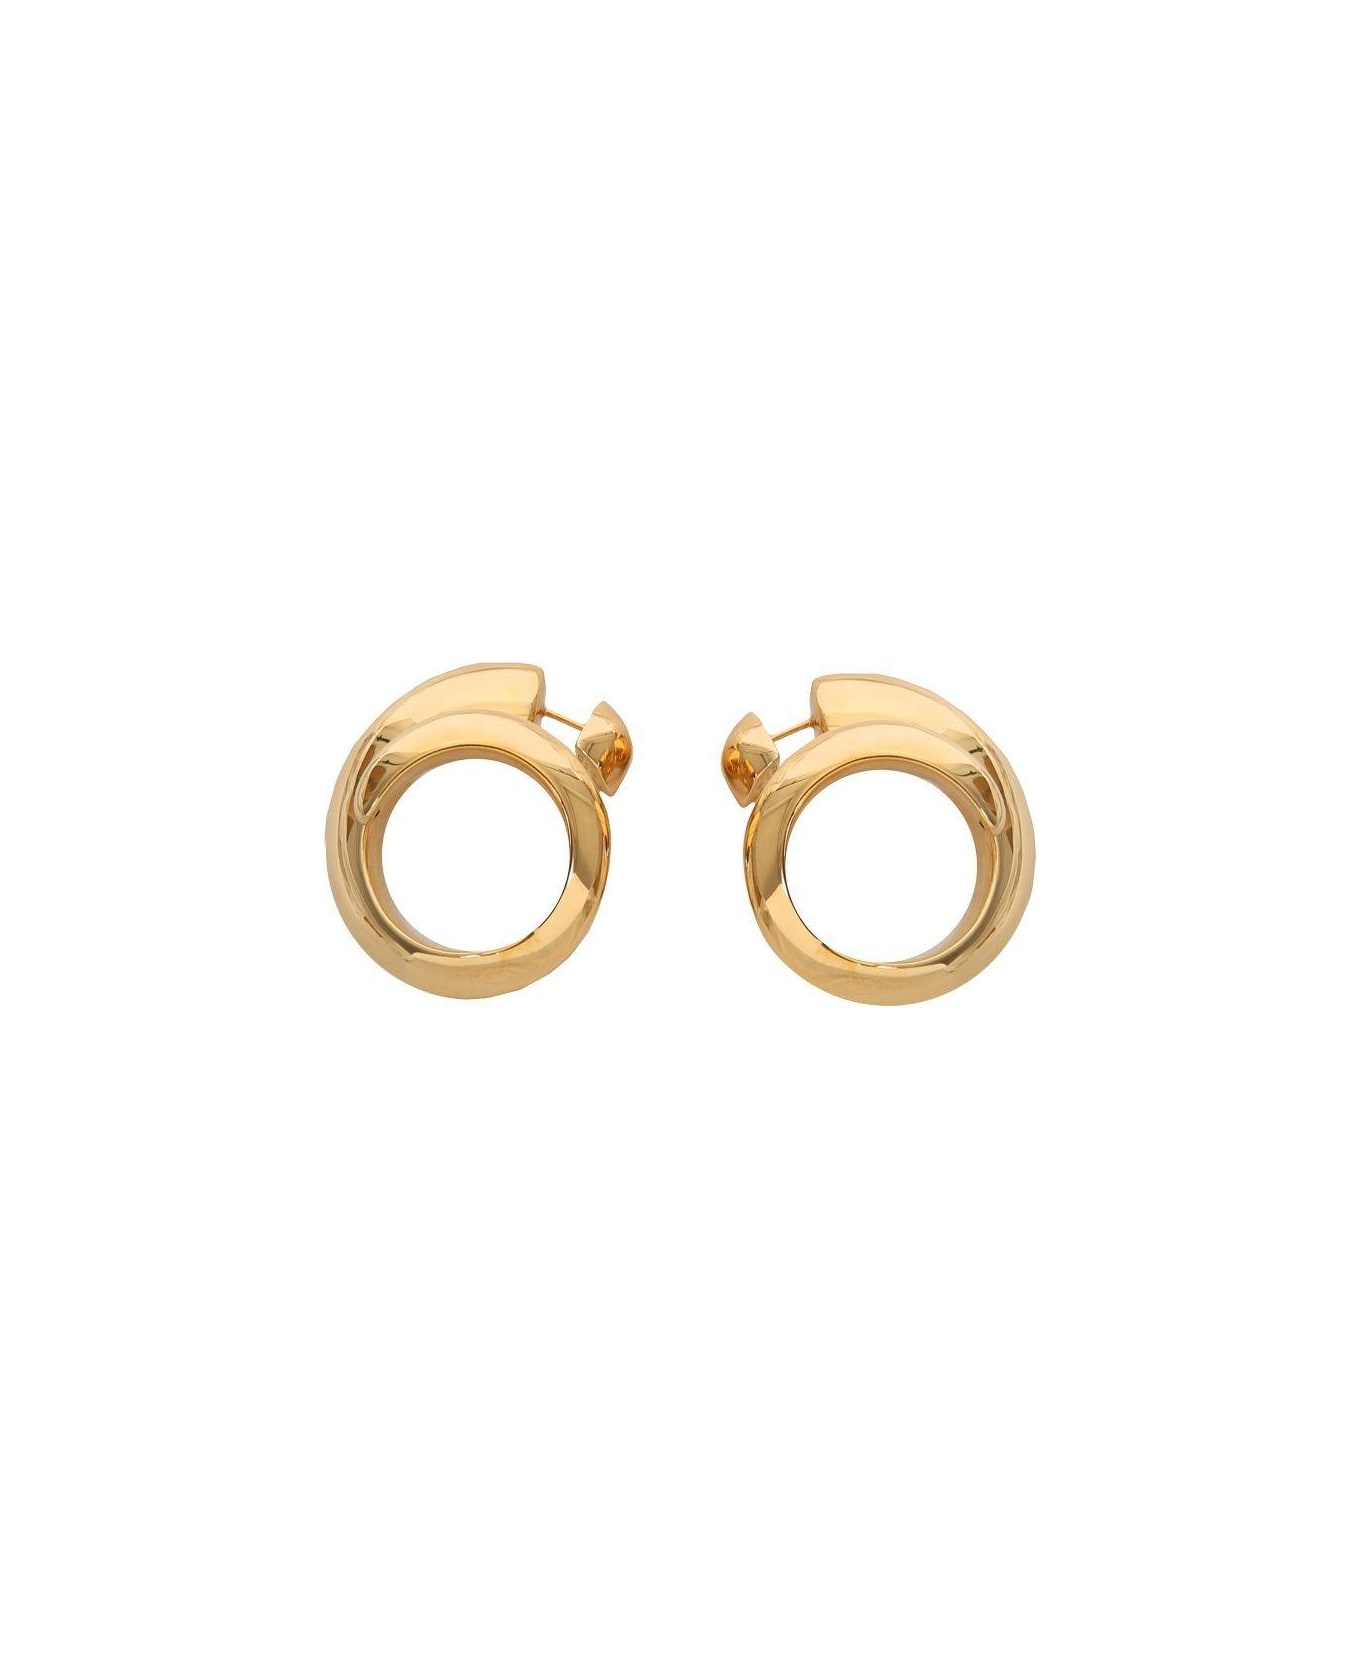 Bottega Veneta Spiral Earrings - GOLD